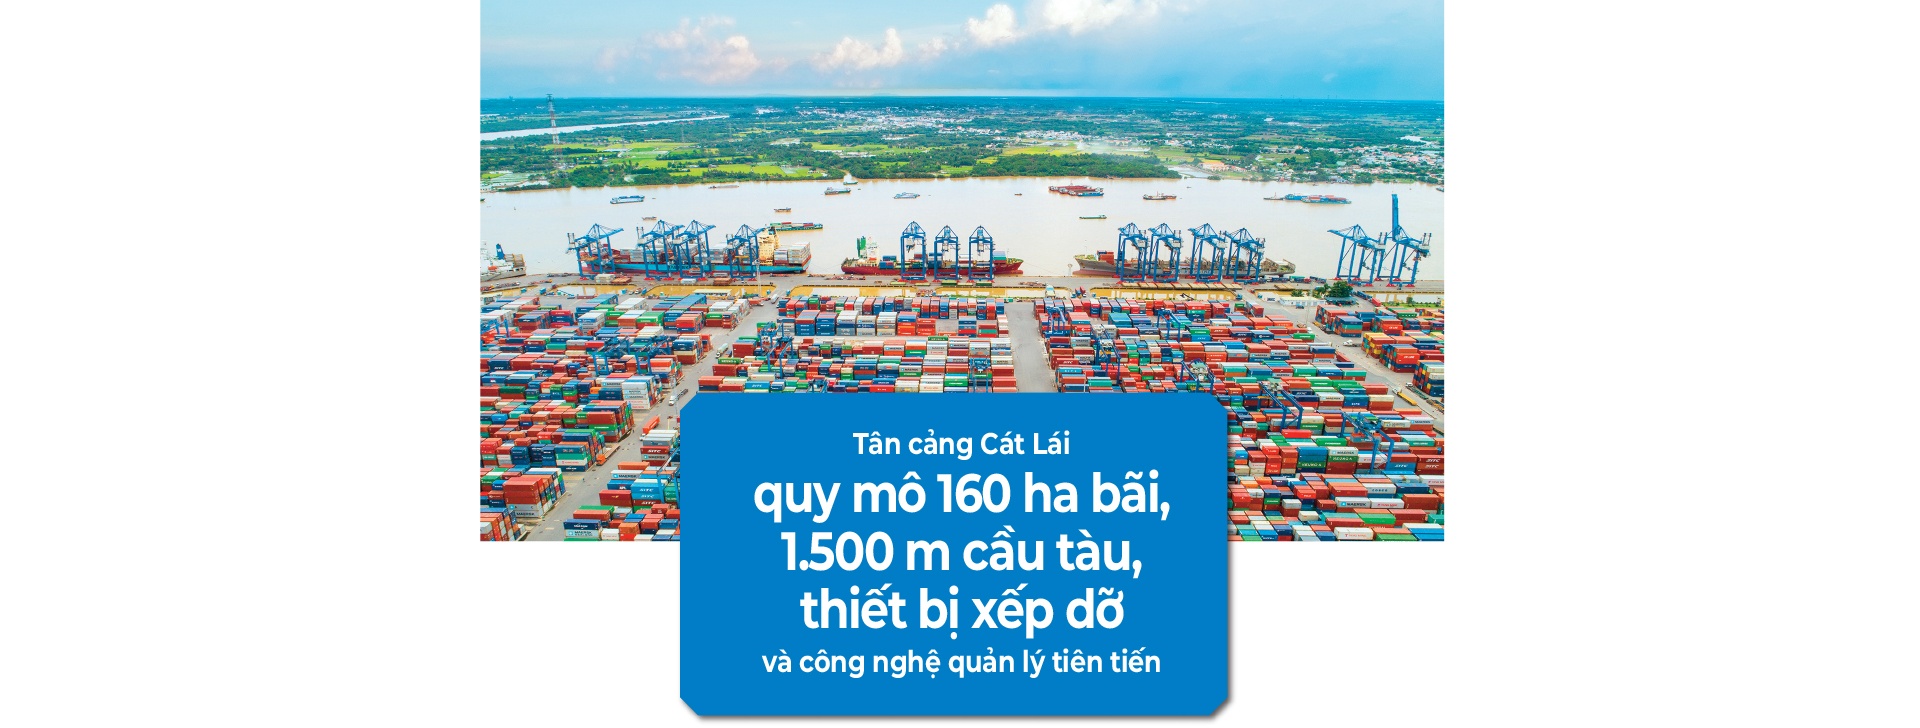 LONGFORM: Cảng biển TPHCM – Vai trò quan trọng thúc đẩy phát triển kinh tế đất nước